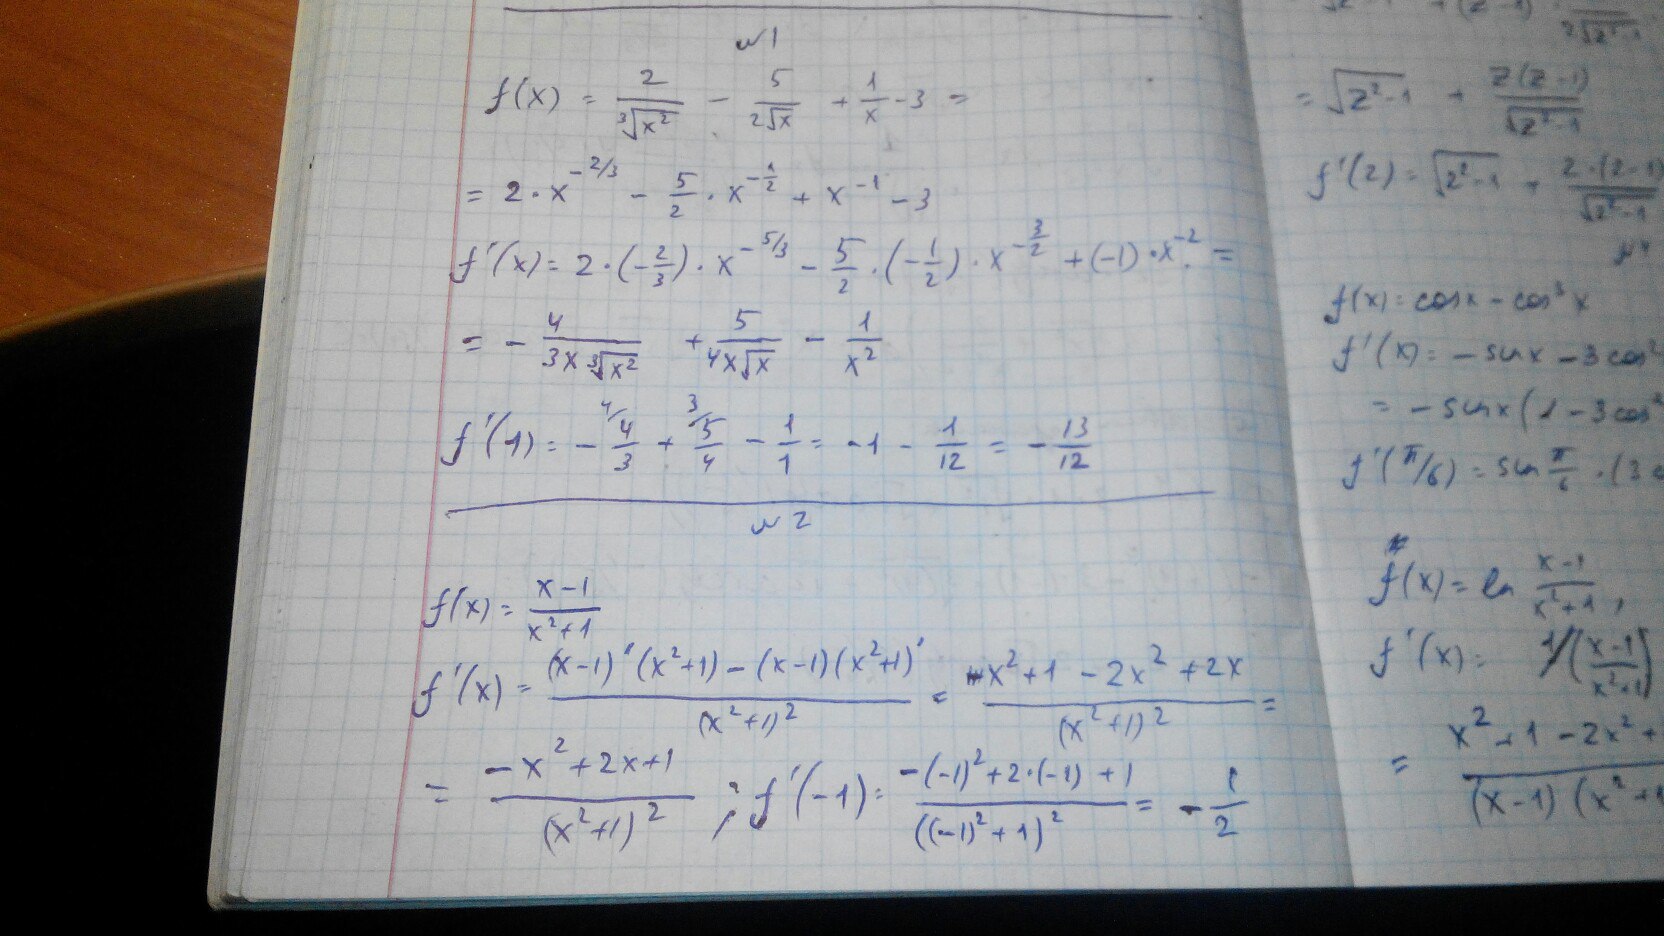 F x 10 корень x. Производная x3/3. Найдите производную функции корень х. F(X)=X корень x^2-3x+4. Вычислите производную при данном значении аргумента х.